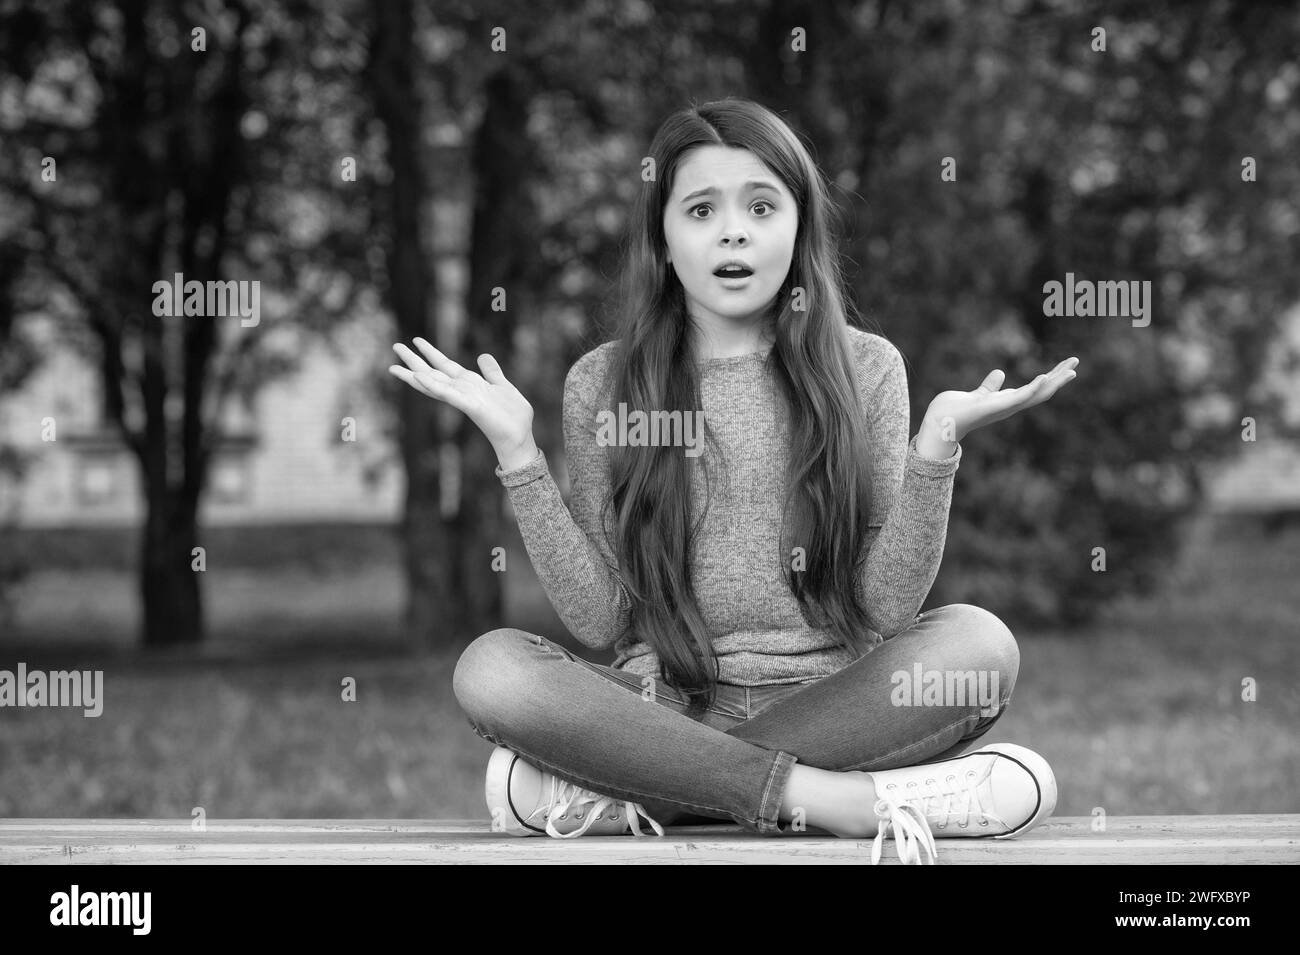 Shocked teenage girl shrugging shoulders sitting legs crossed on bench outdoors, shock. Teenage girl being in shock. Stock Photo